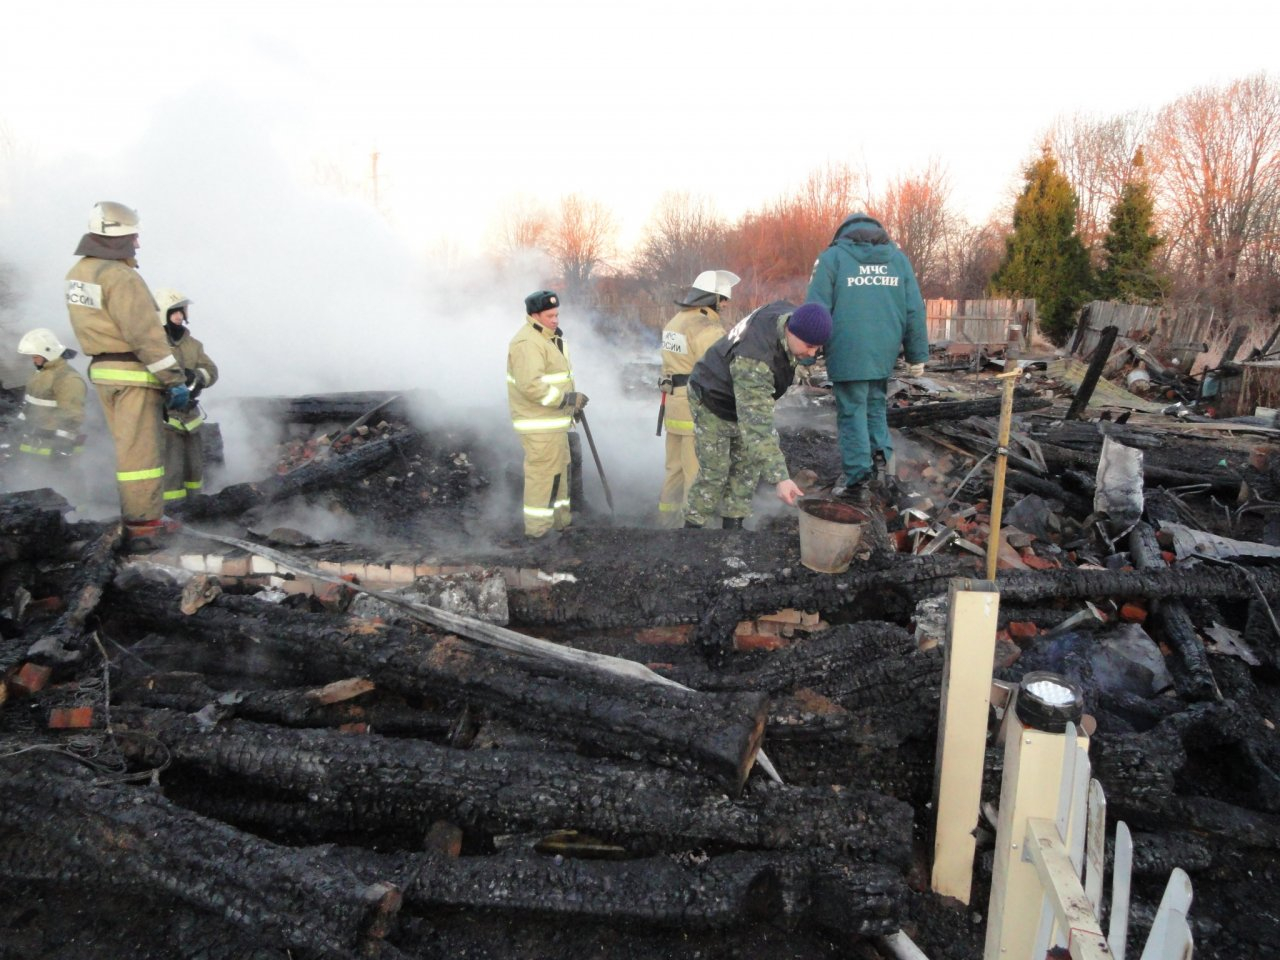 Пятеро детей погибли на пожарах во Владимирской области с начала года